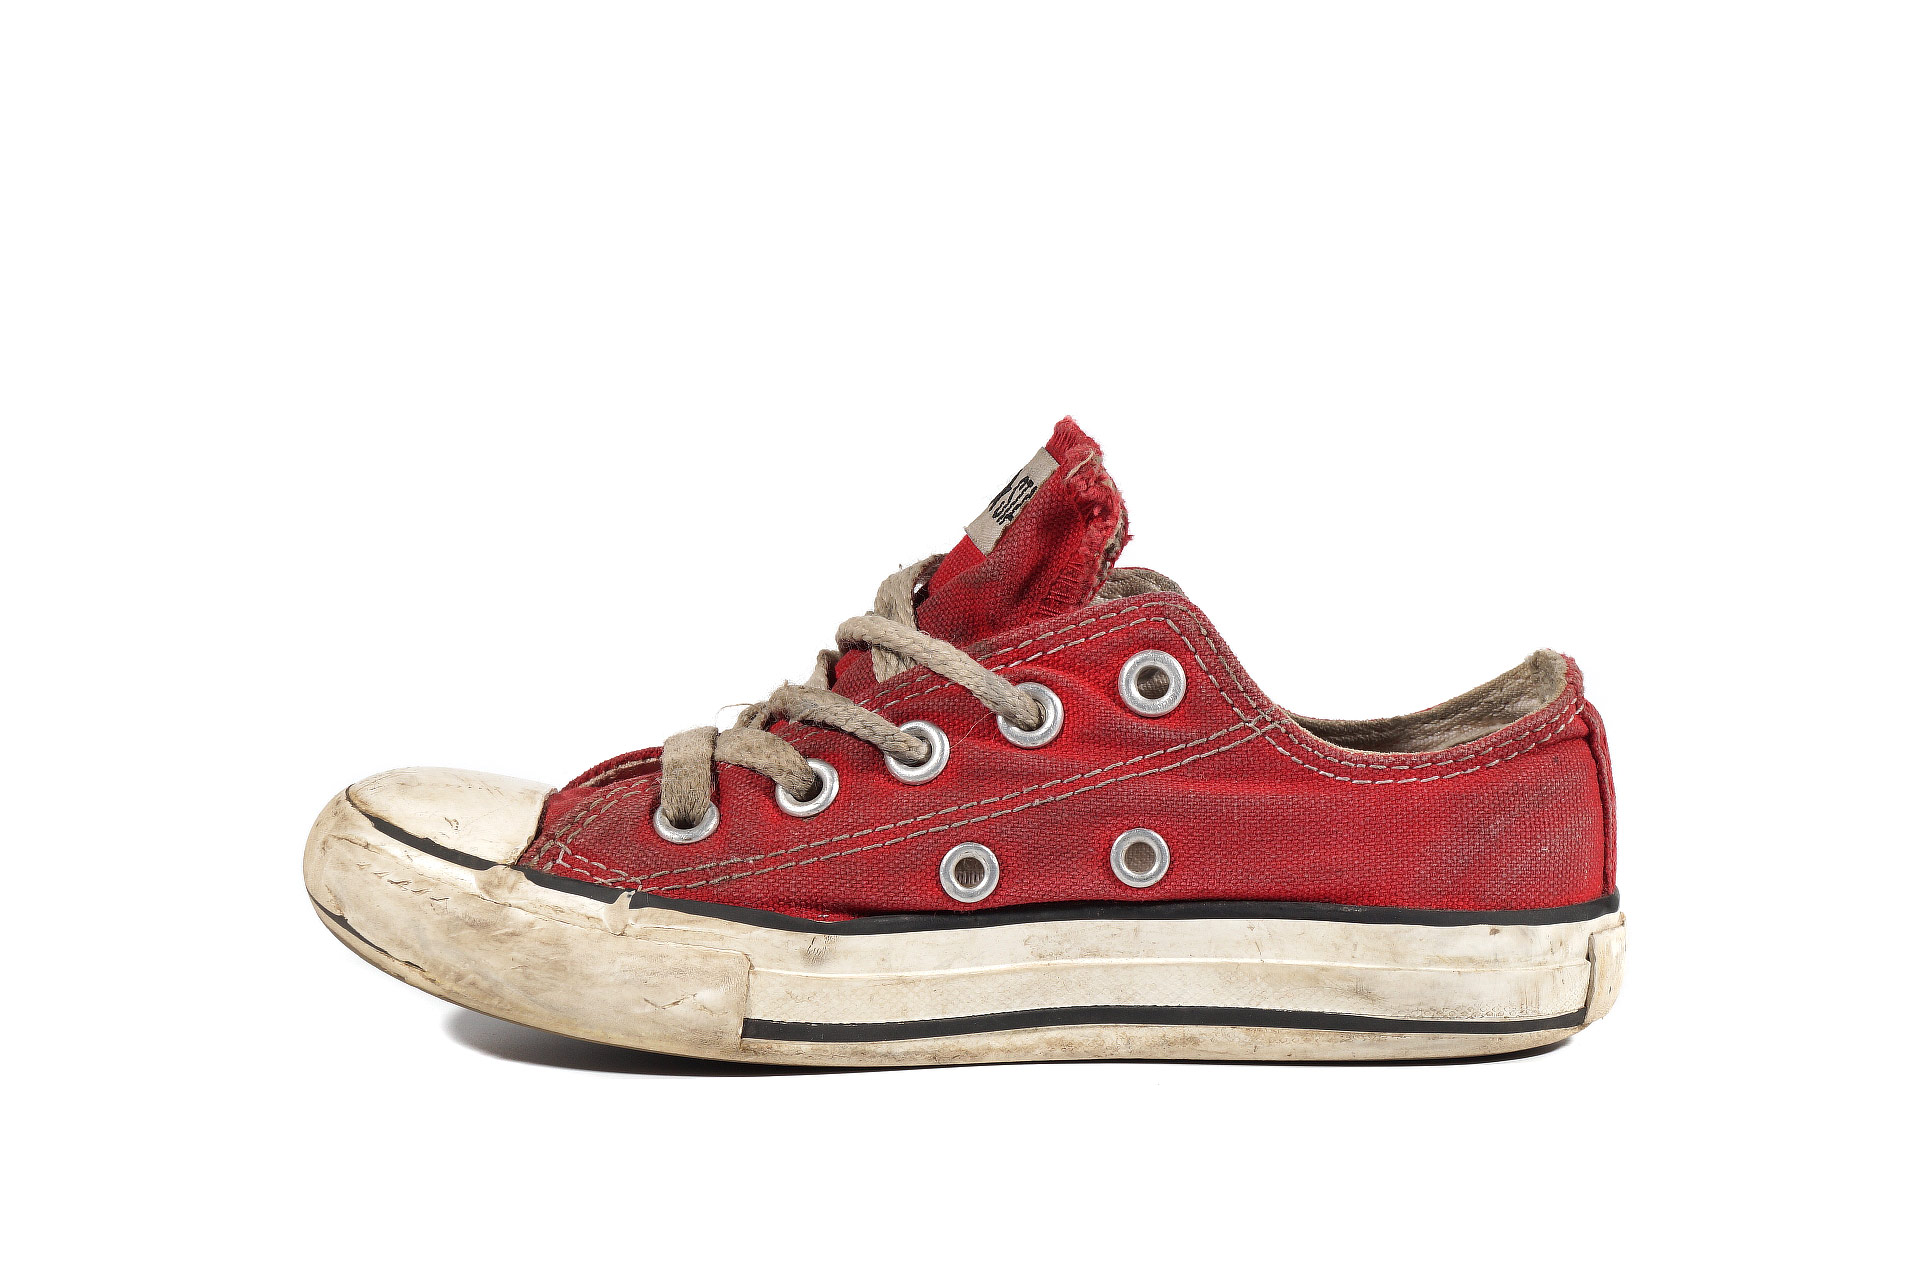 Бу детские кеды Converse Chuck Taylor All Star 3J236 (00133-U) низкие  красные купить дешево за 849р. в интернет магазине vintageshoes.ru